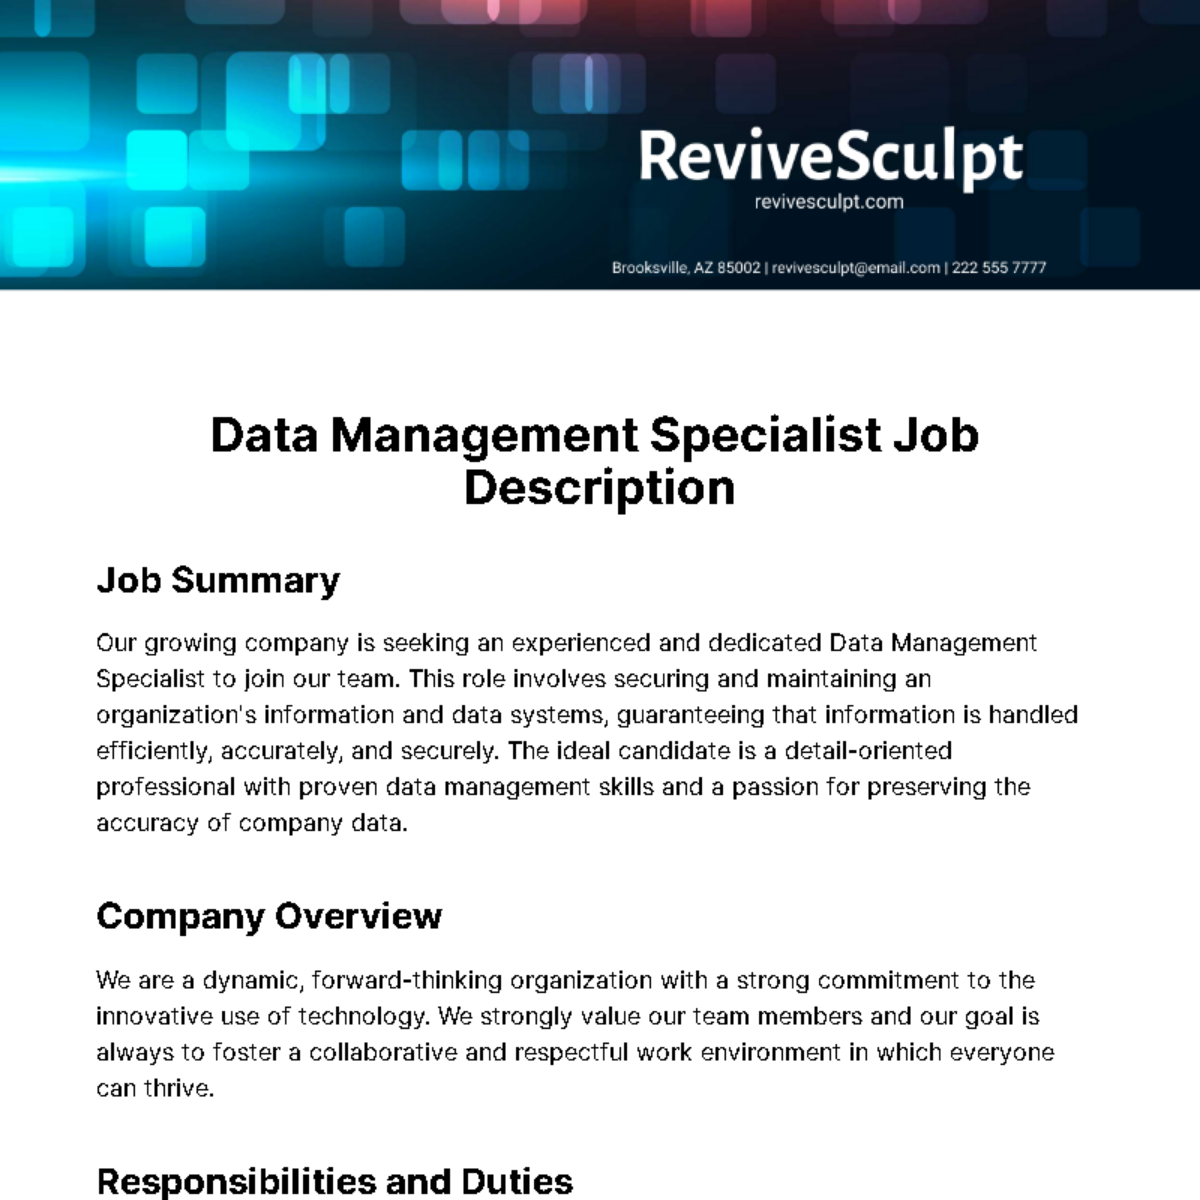 Data Management Specialist Job Description Template